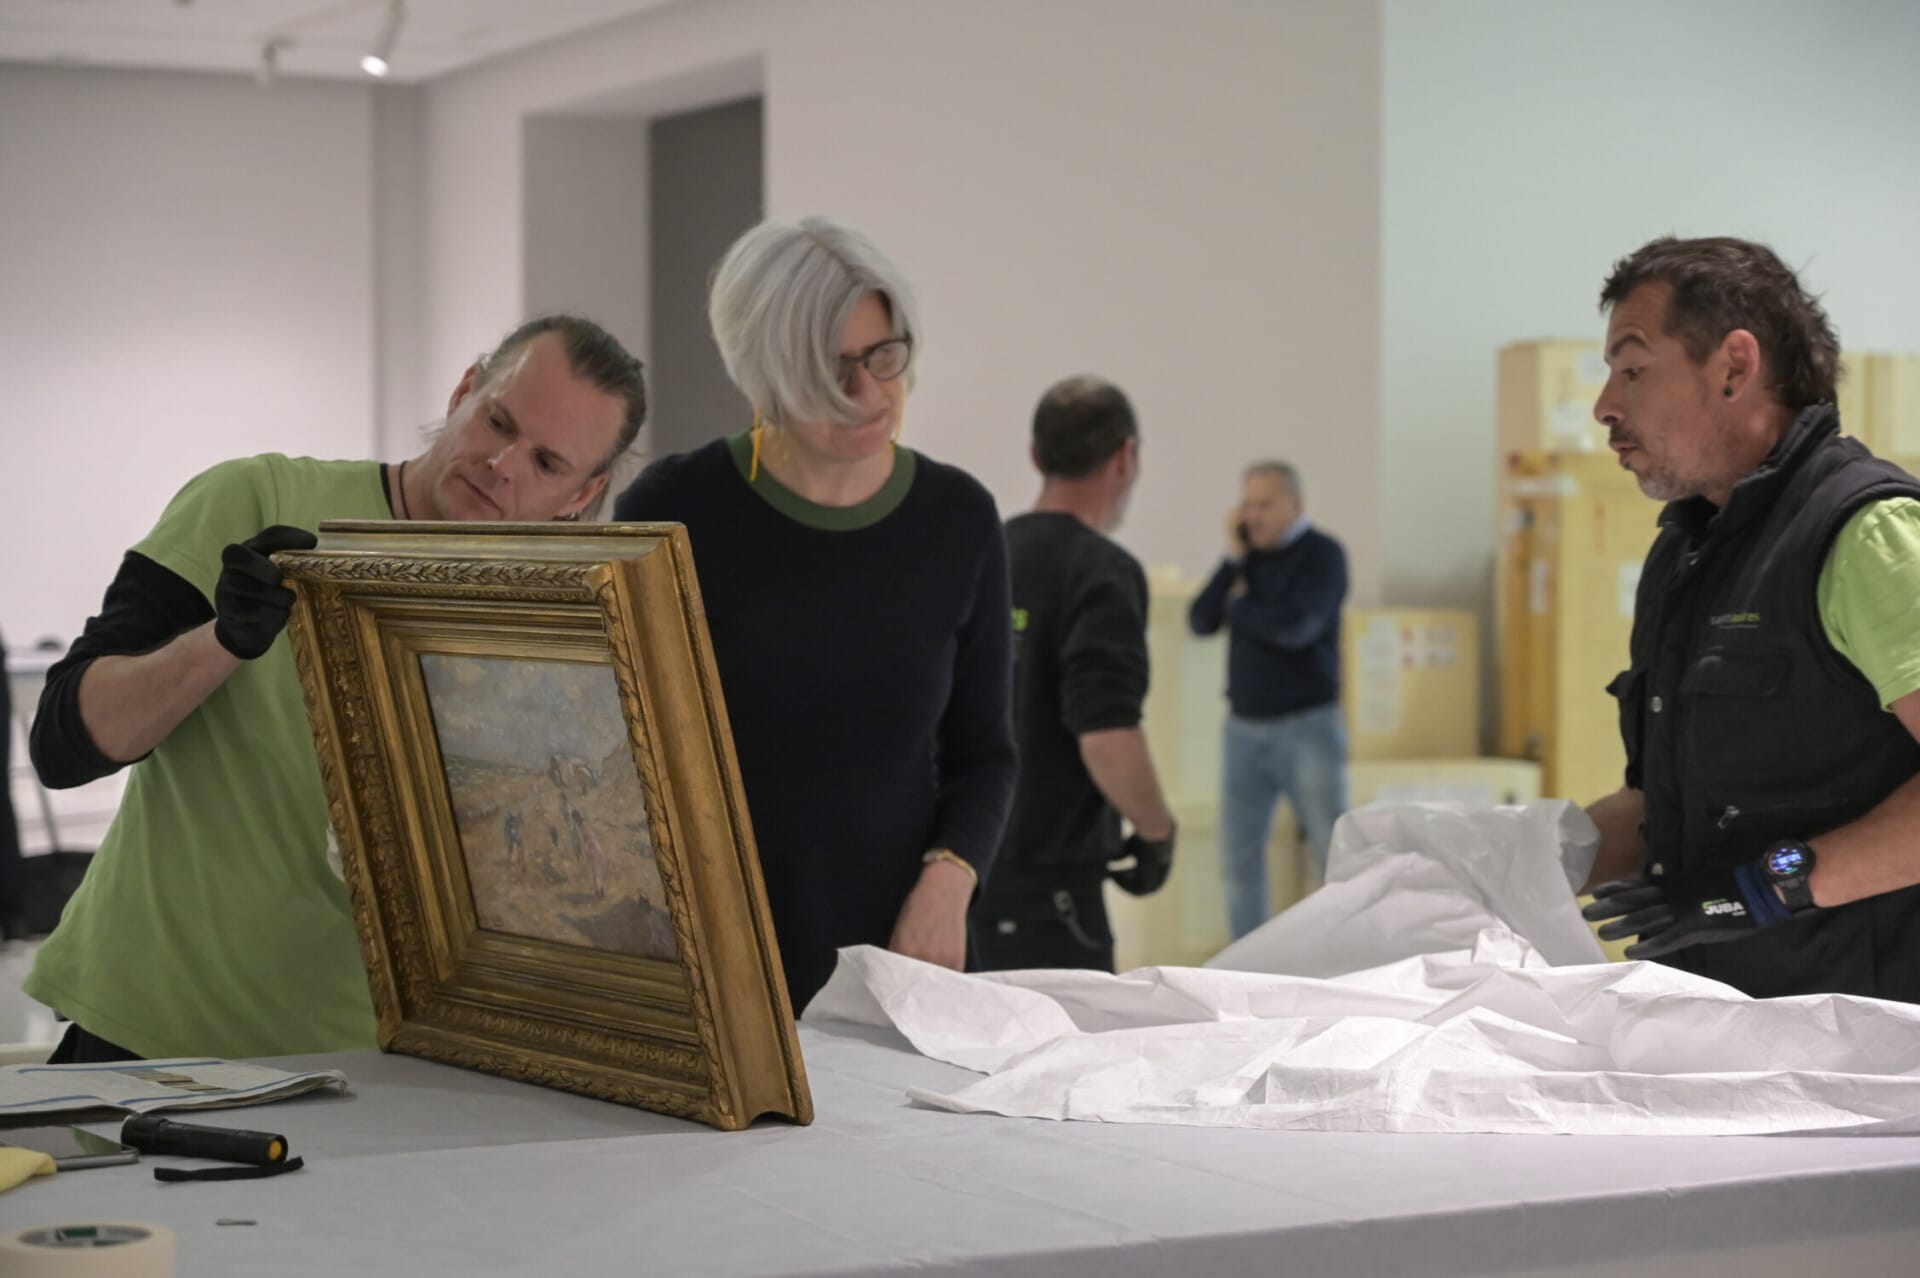 Las grandes obras maestras del arte belga moderno llegan a la Fundación Bancaja para mostrarse por primera vez en València